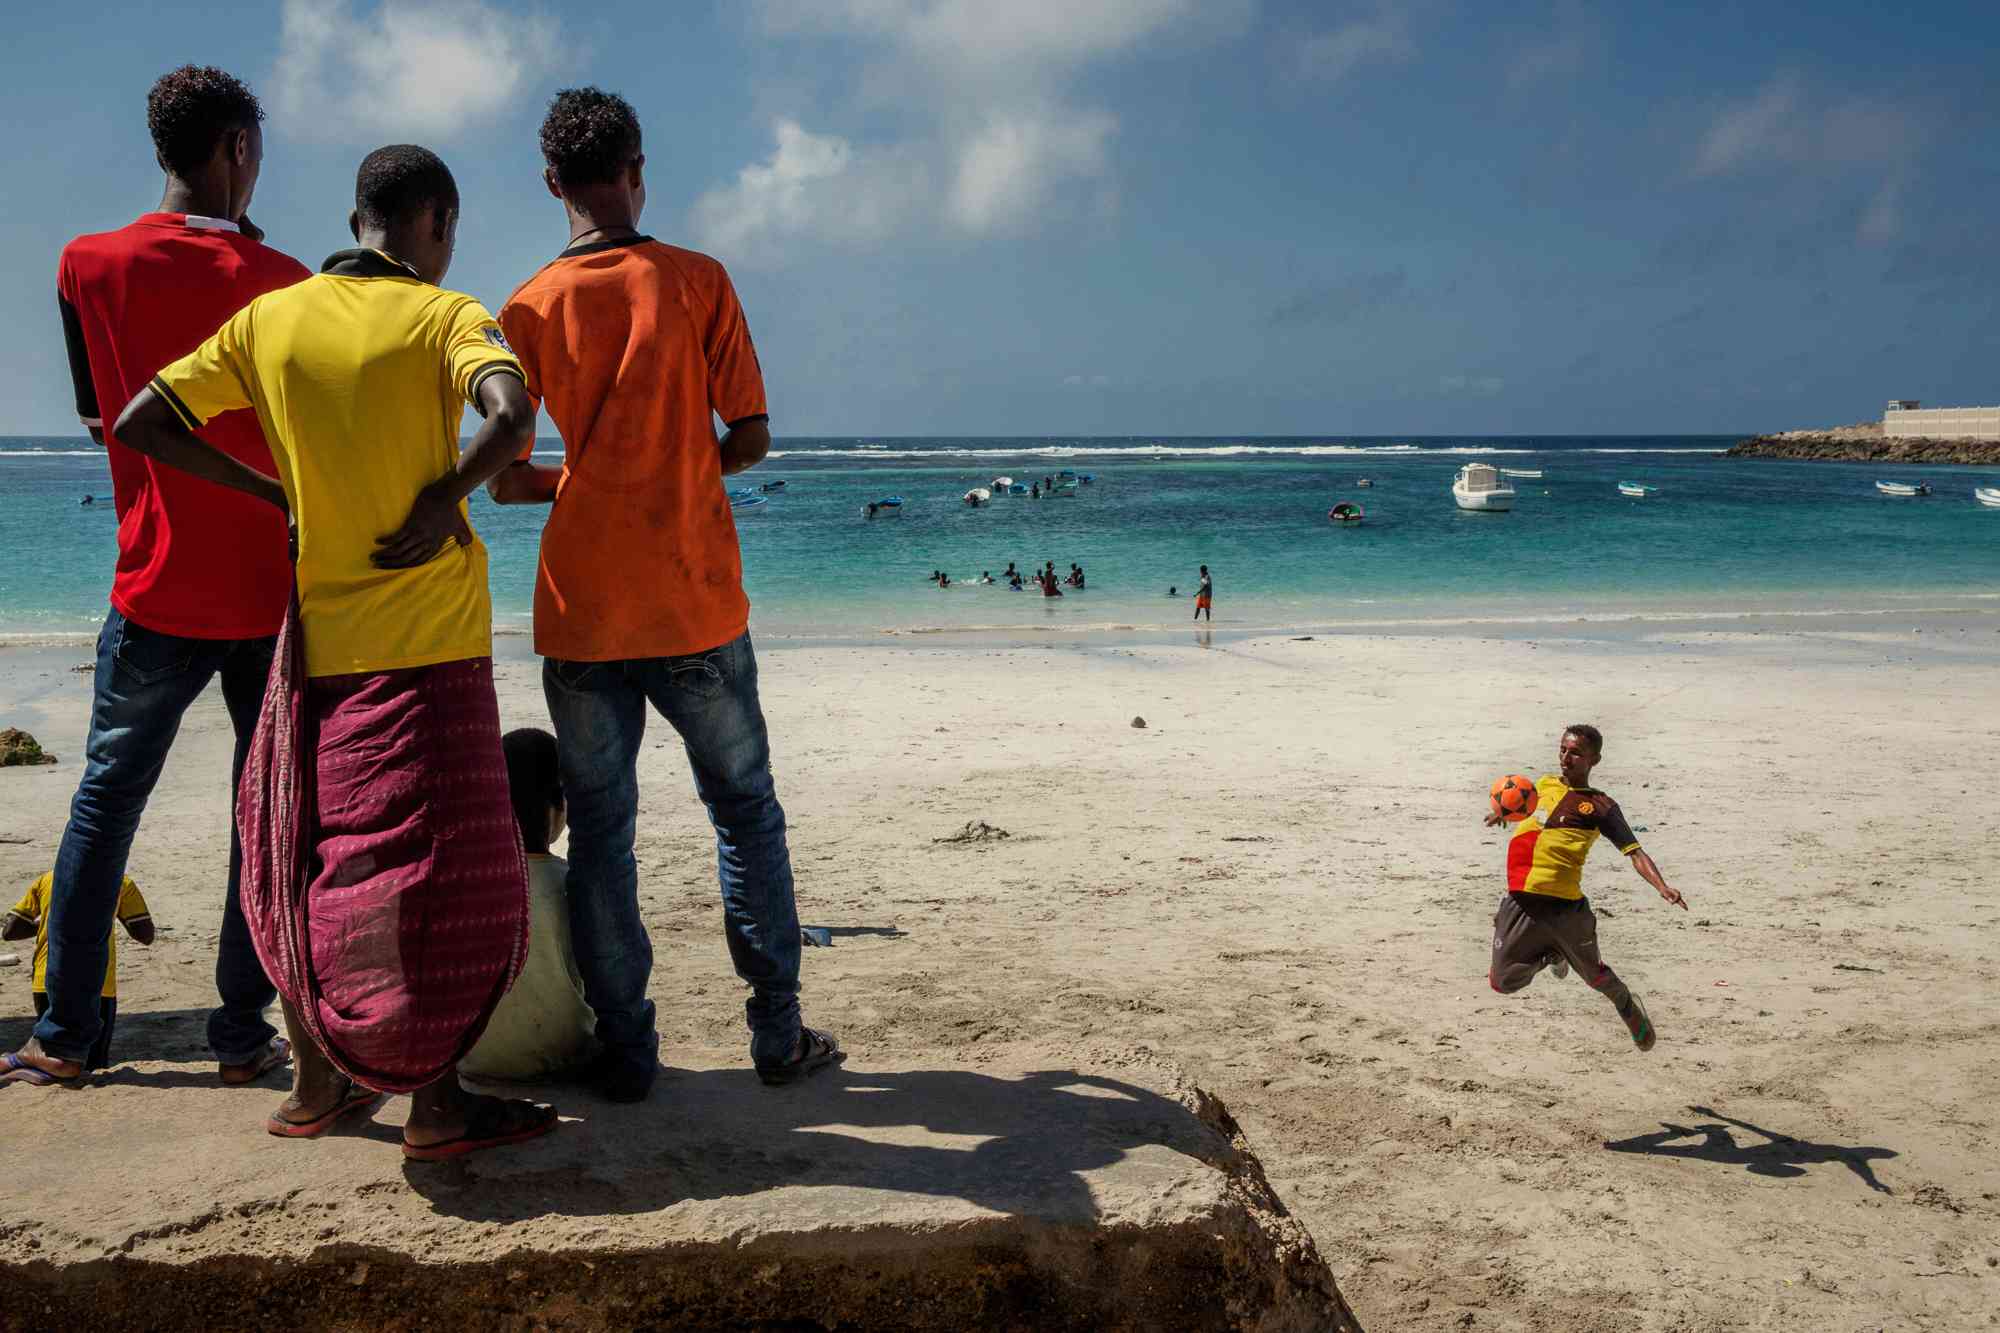 战乱后的浴火重生 在艰辛中生存的索马里